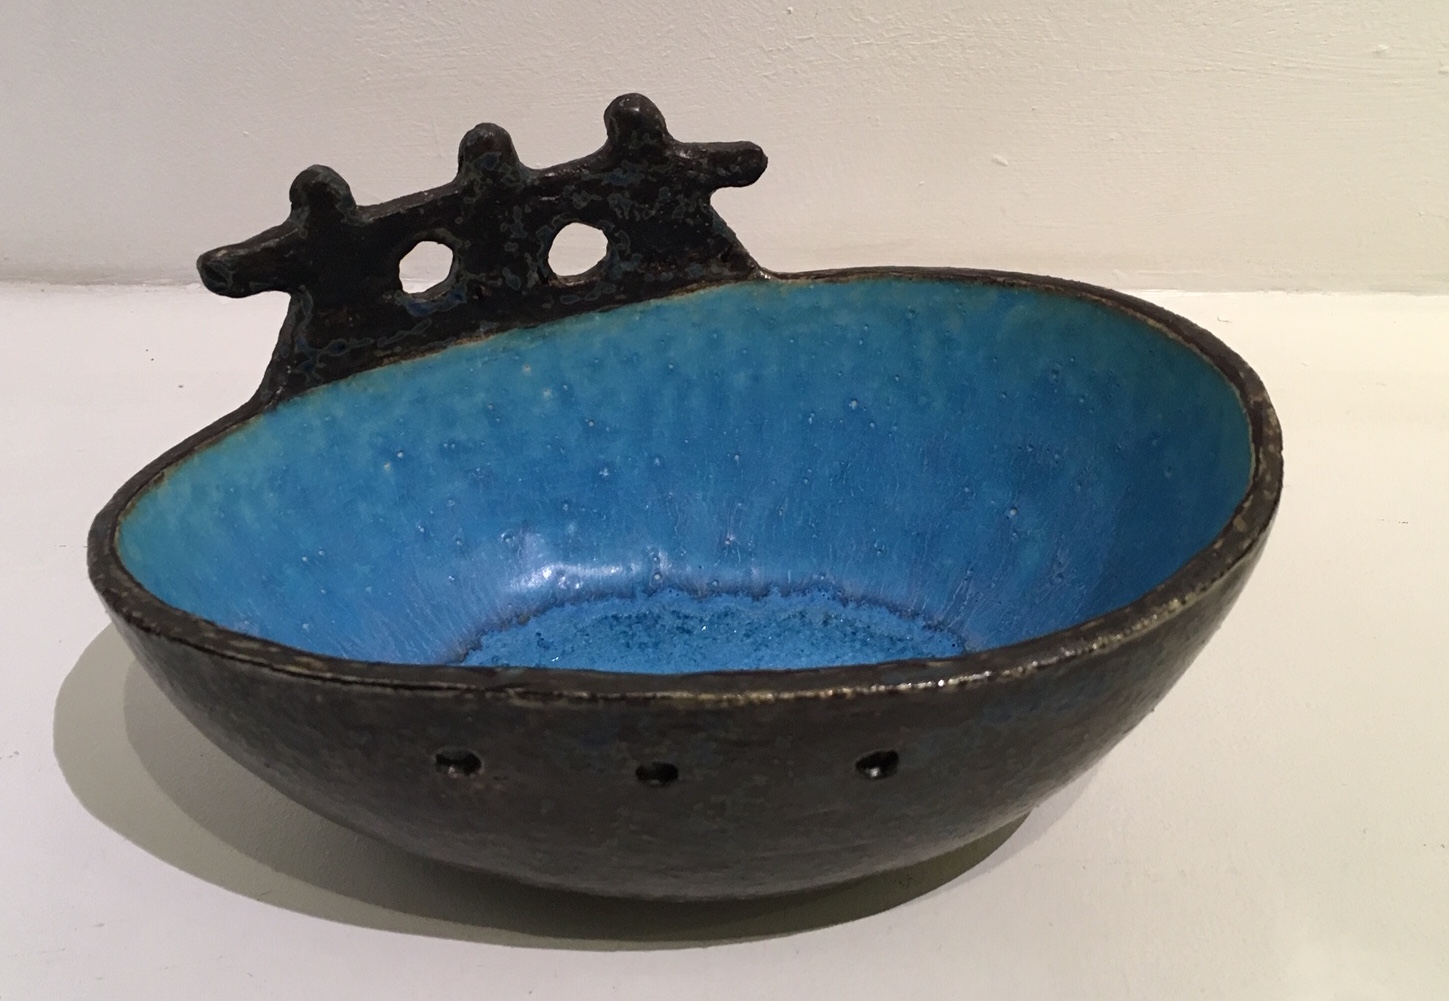  Title: Three Men in a Boat Medium: Ceramic Stoneware  